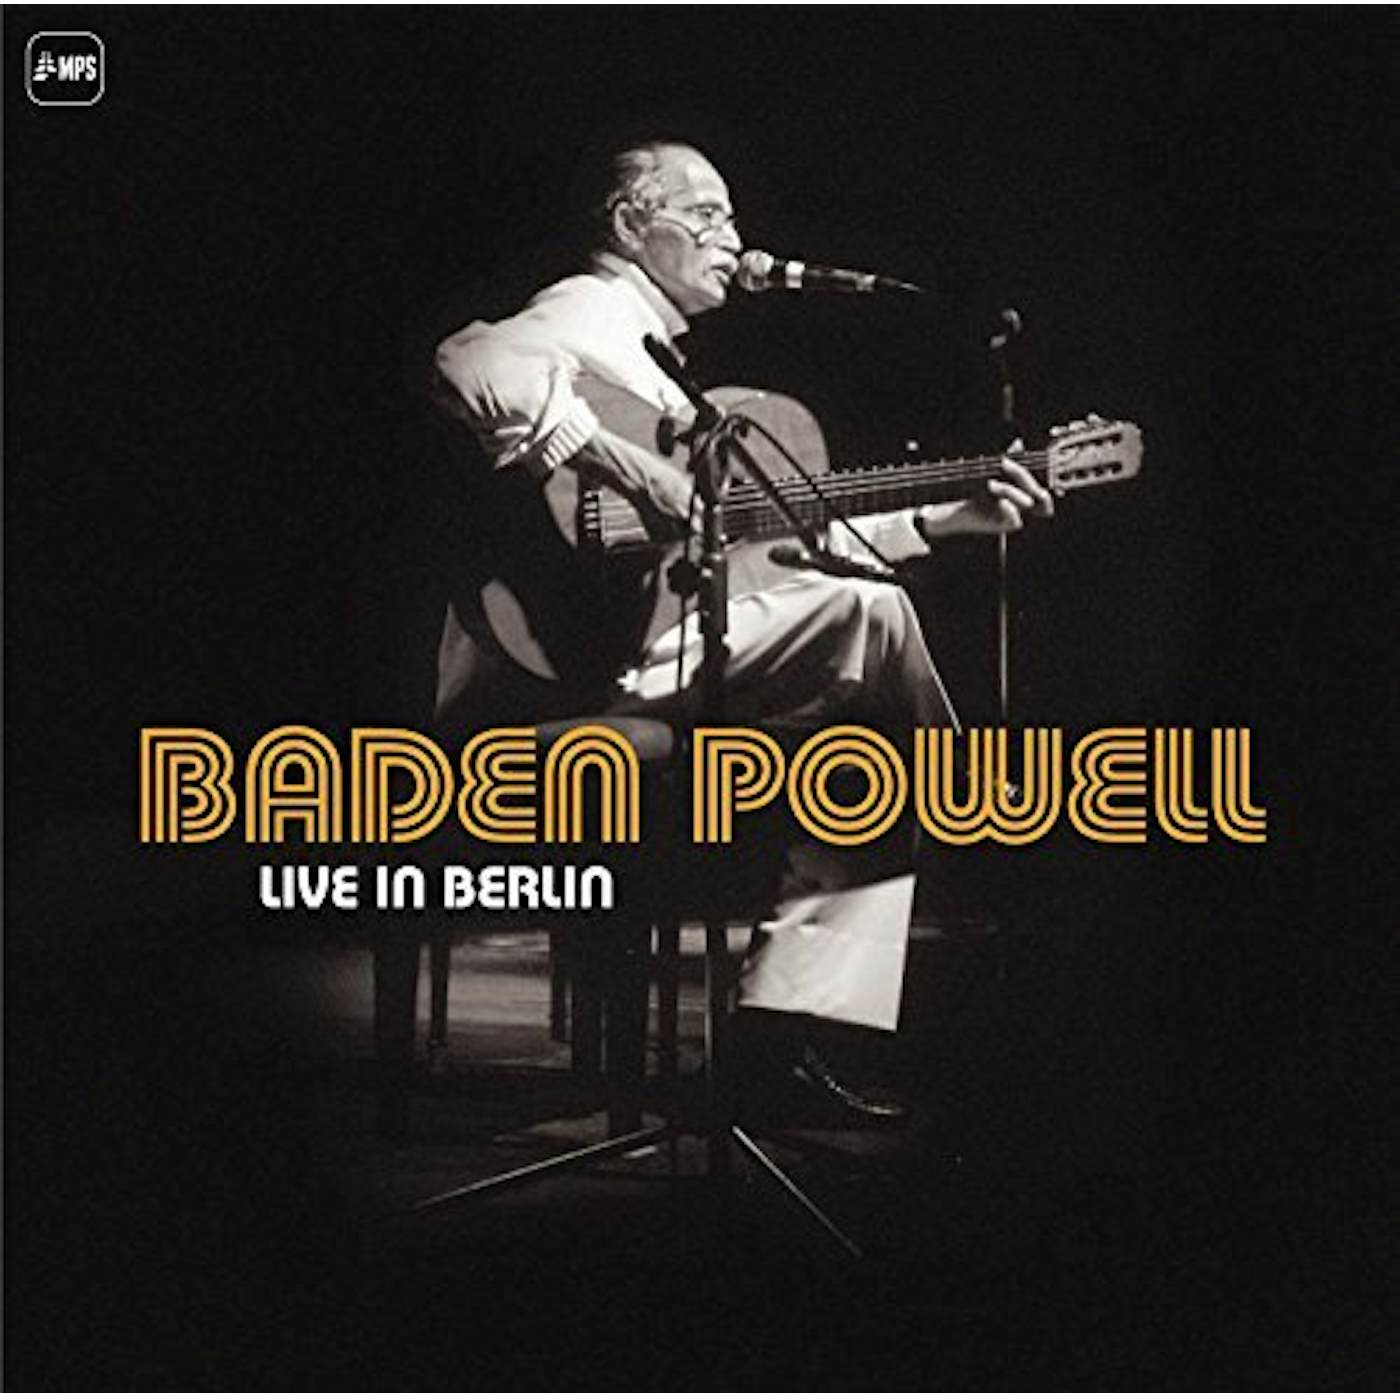 Baden Powell LIVE IN BERLIN (3LP) Vinyl Record